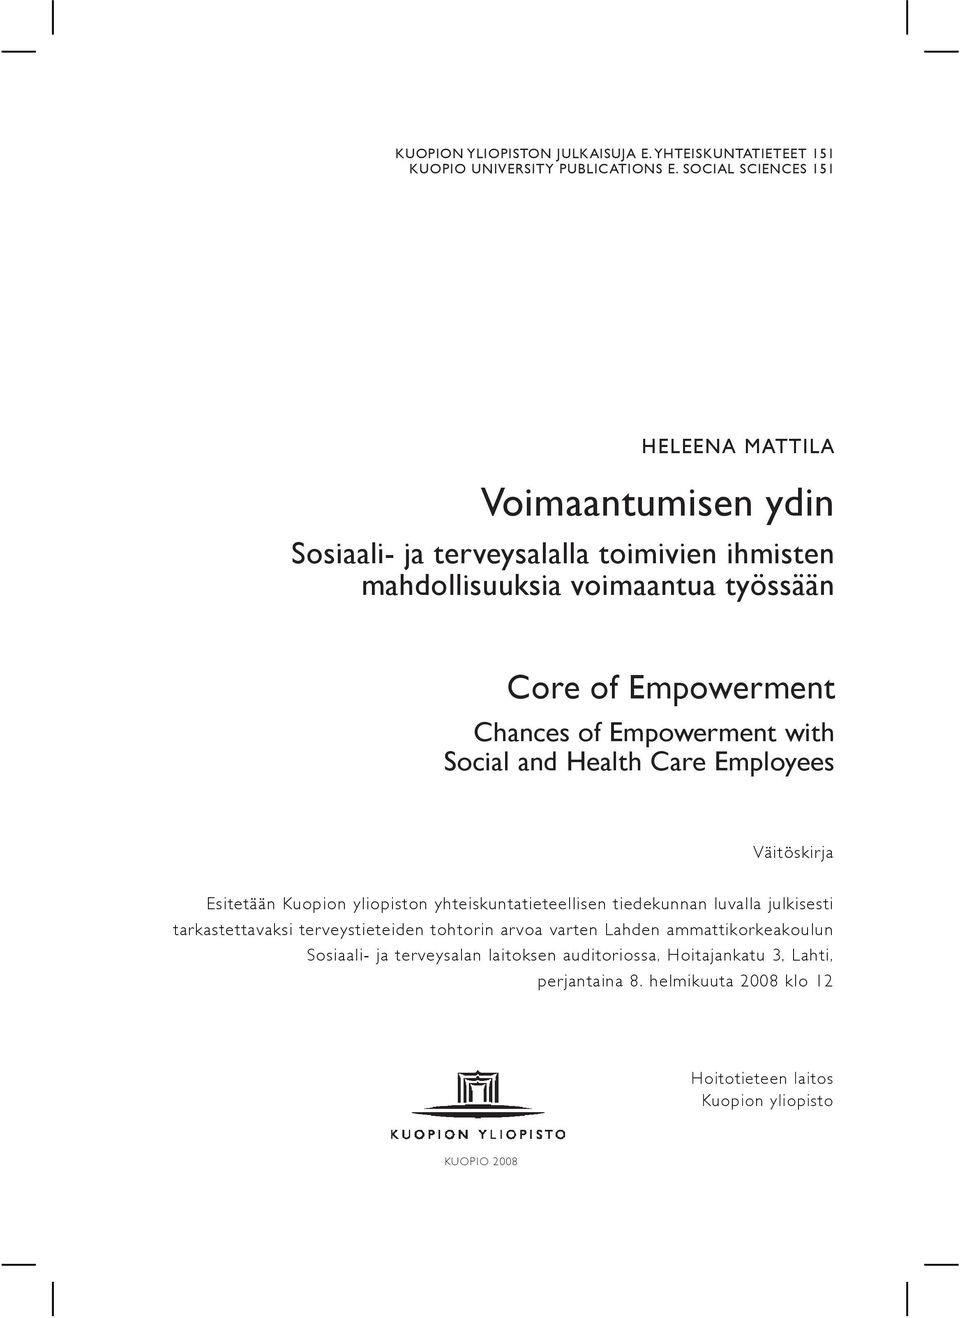 Chances of Empowerment with Social and Health Care Employees Väitöskirja Esitetään Kuopion yliopiston yhteiskuntatieteellisen tiedekunnan luvalla julkisesti